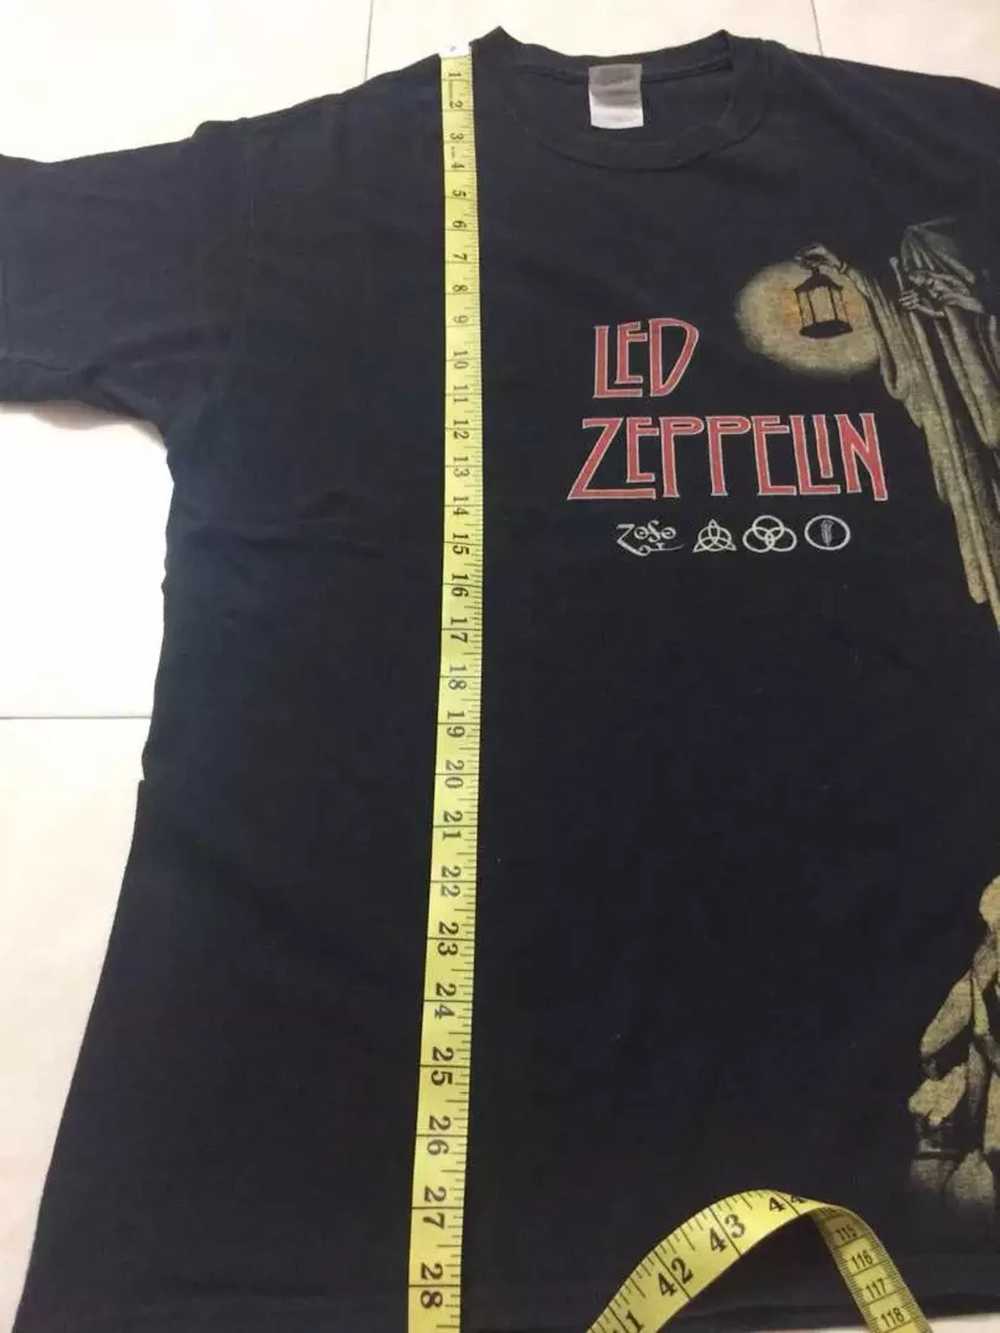 Vintage Vintage Led Zeppelin t shirt - image 5